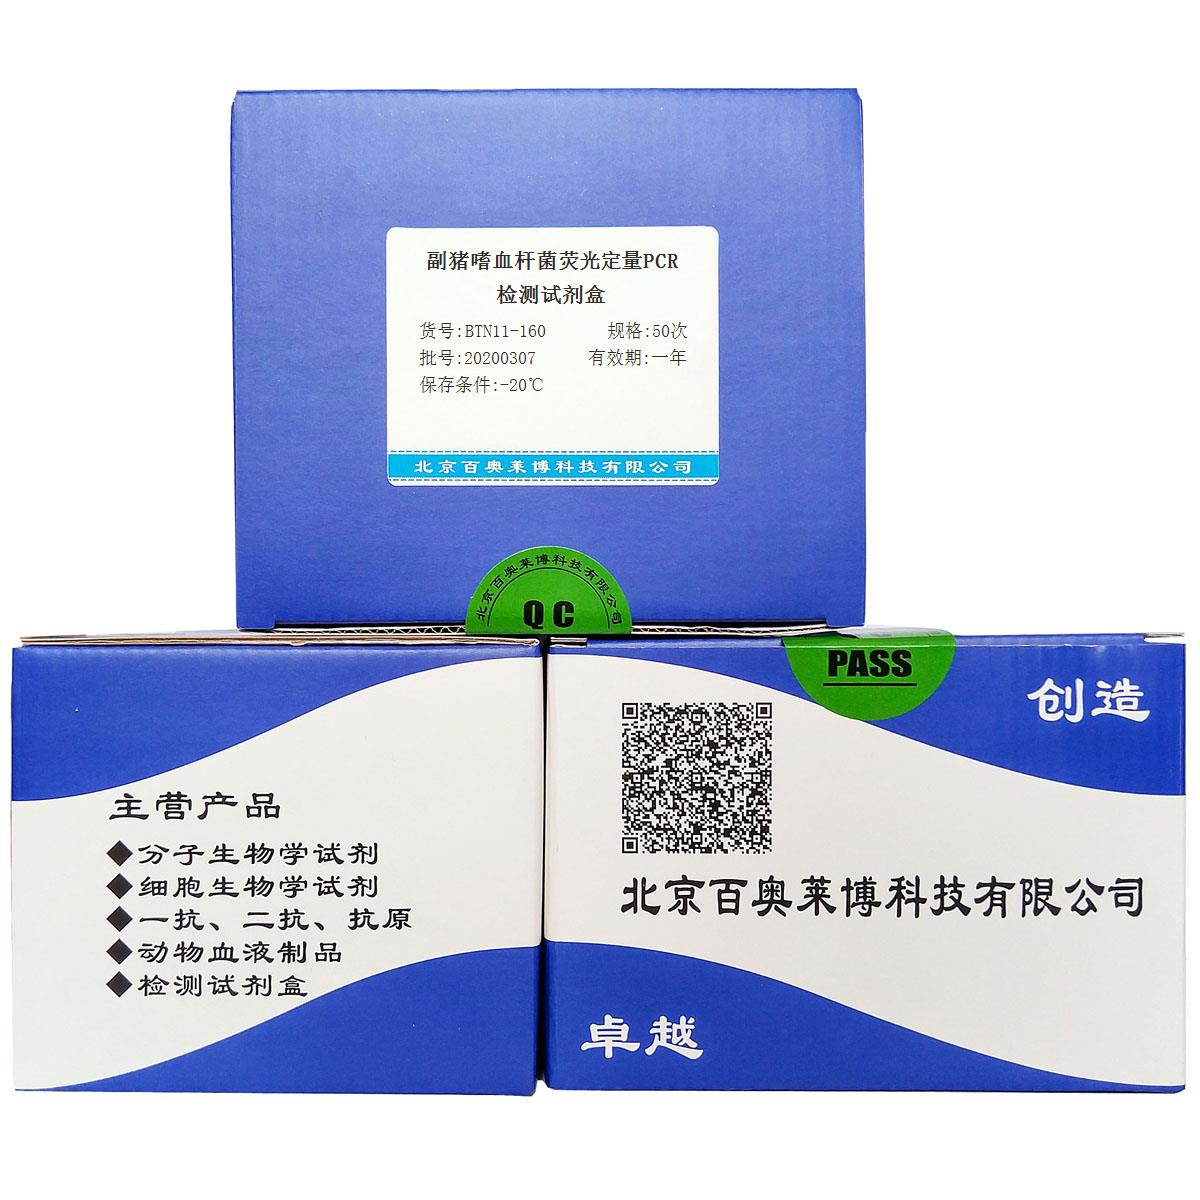 副猪嗜血杆菌荧光定量PCR检测试剂盒现货供应